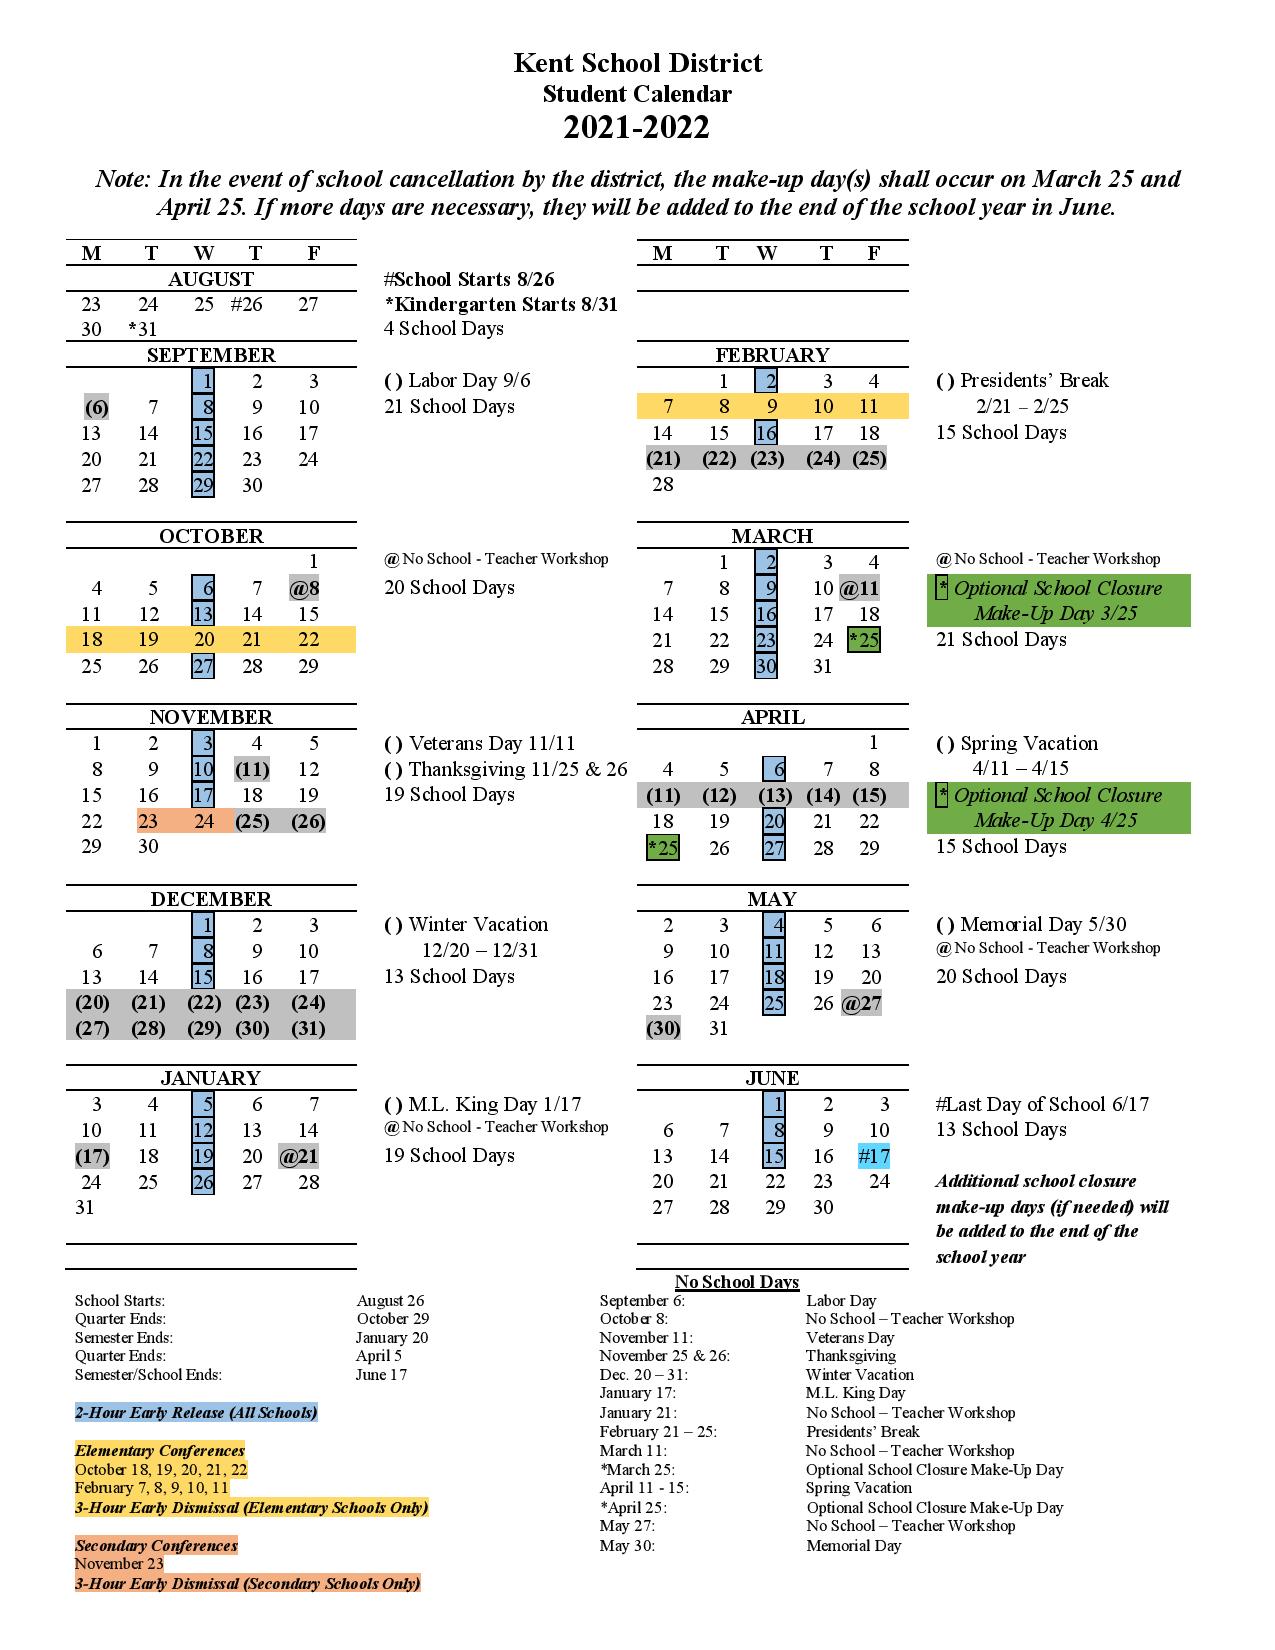 Kent School District Calendar 2021-2022 in PDF - Download Here